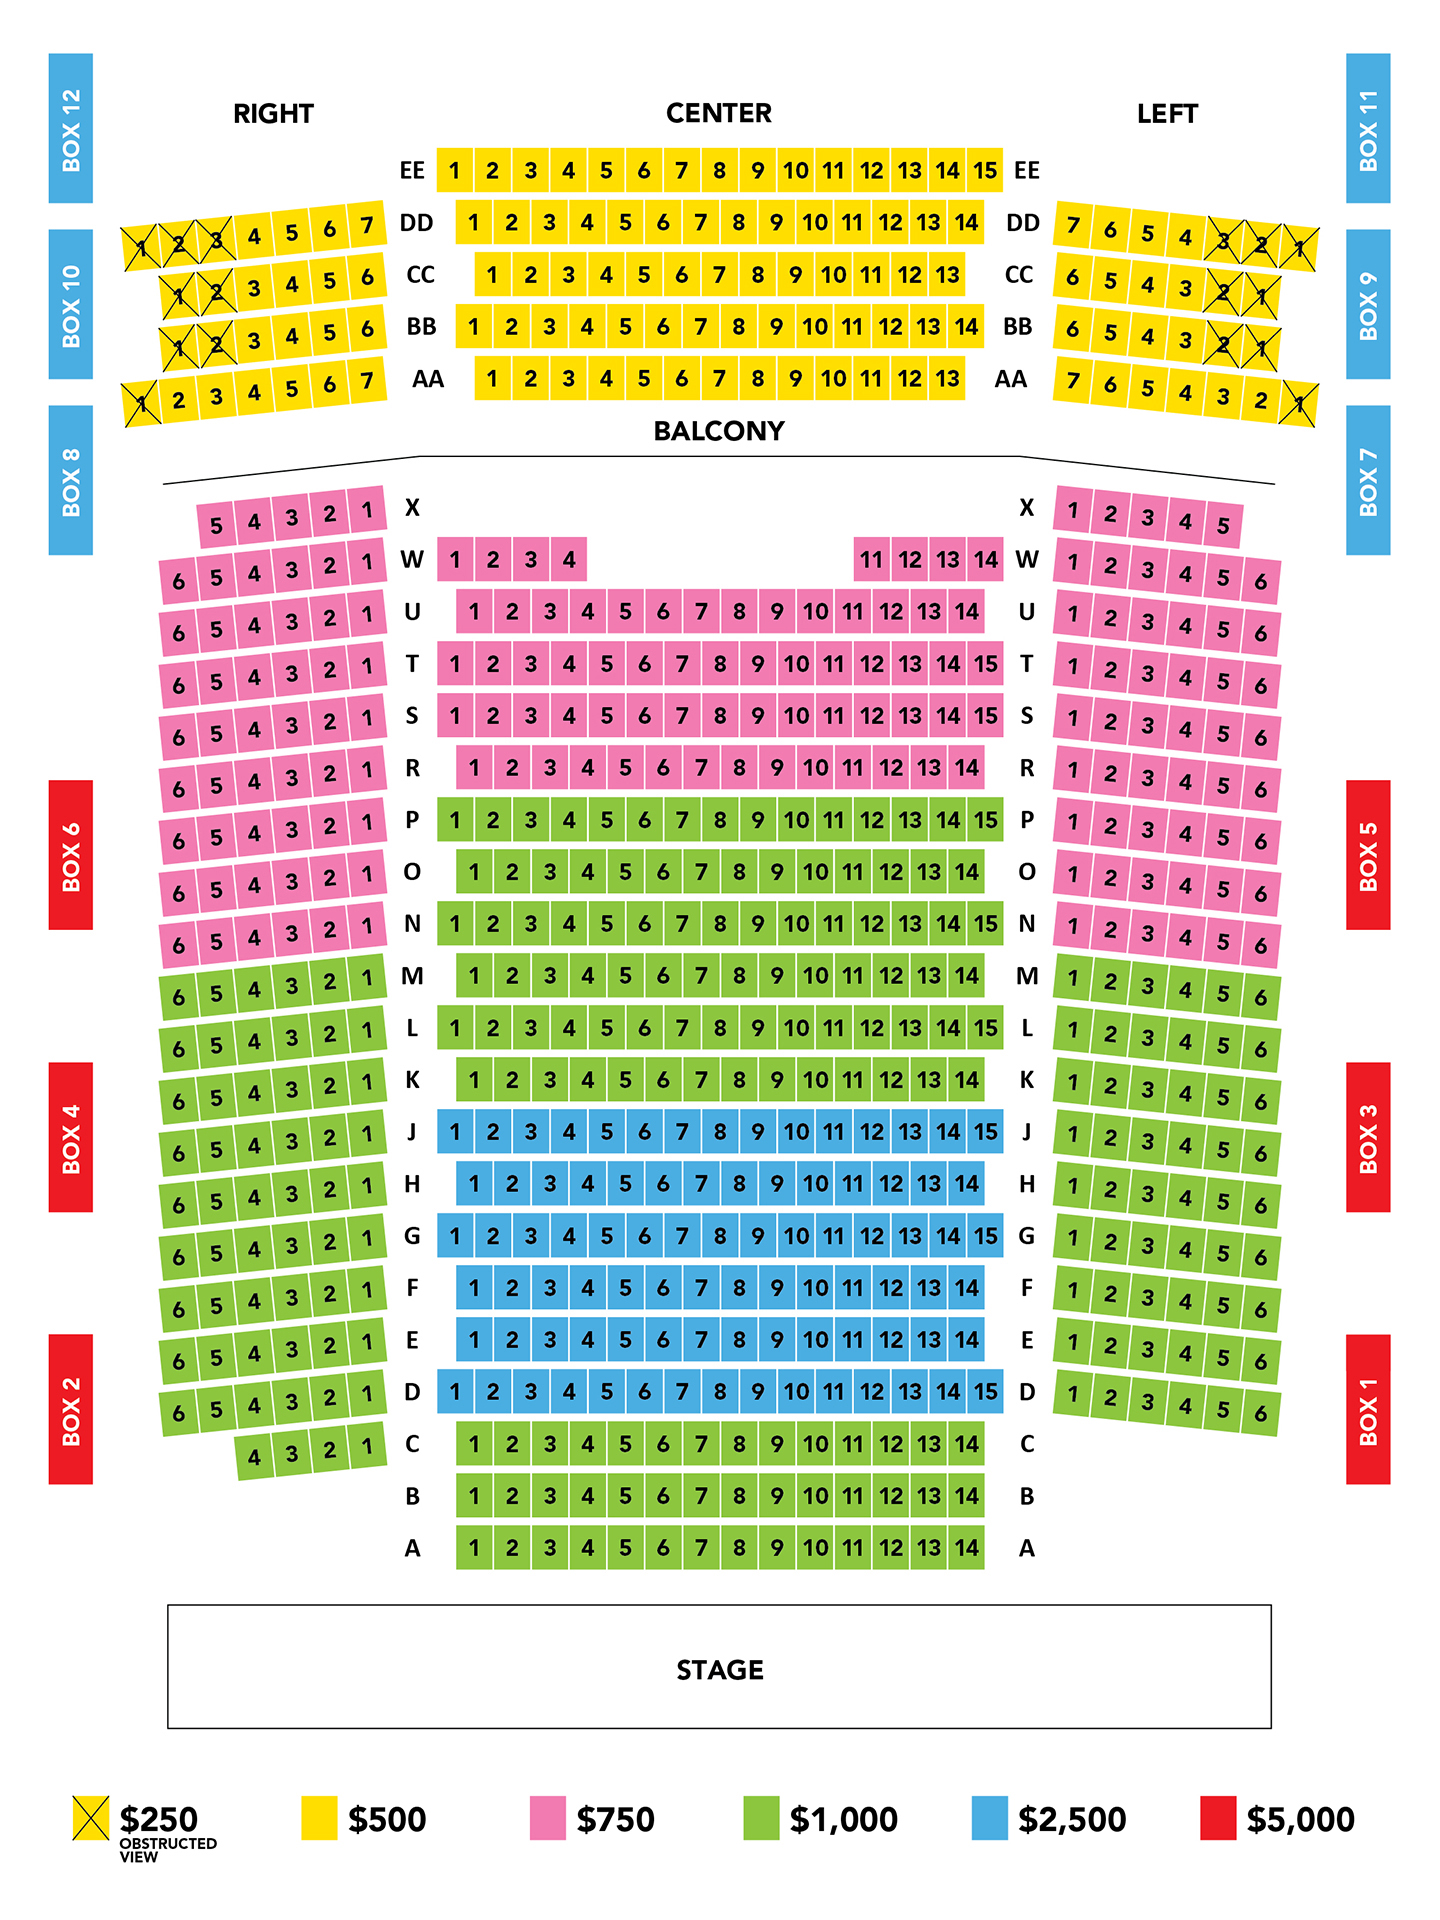 Corbett Auditorium Seating Chart